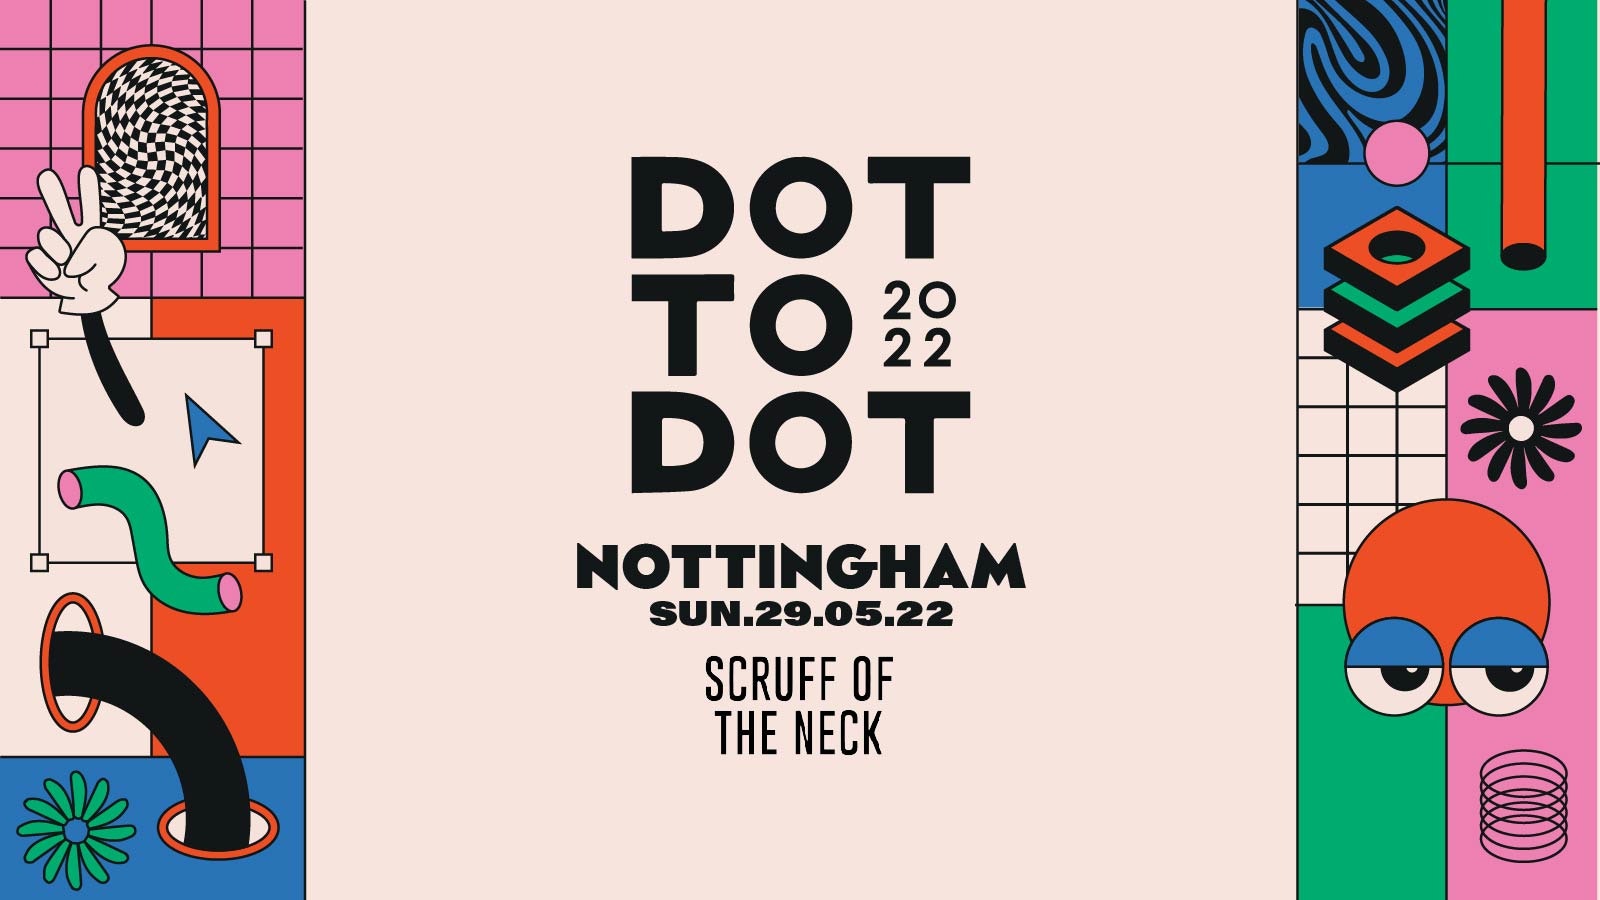 Dot to Dot Festival, Nottingham